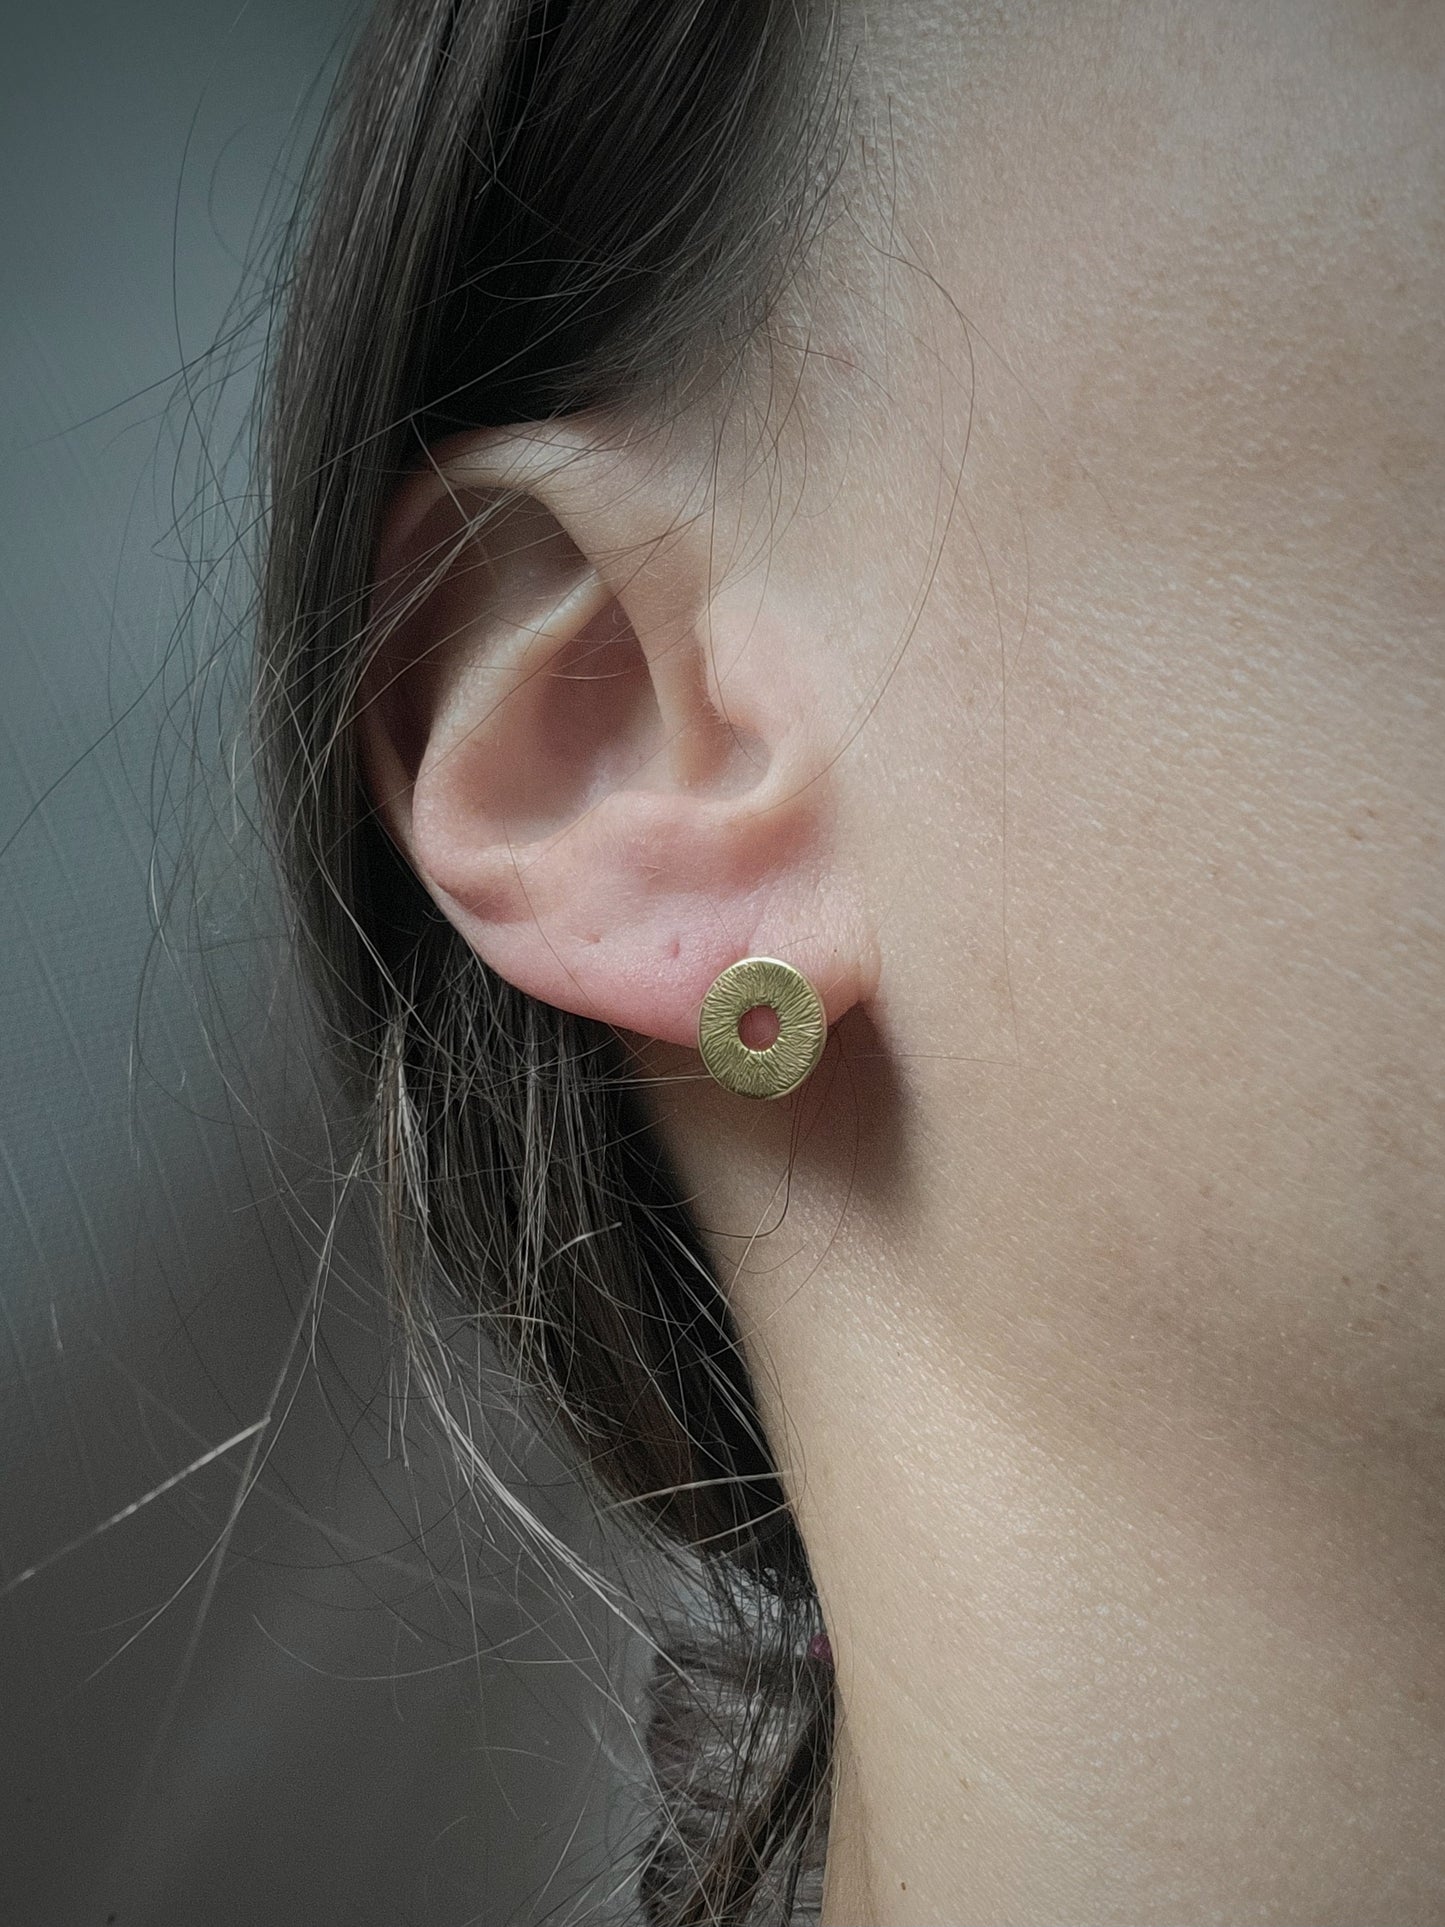 Gold Manifestation earrings in drop earrings by inspirational jewelry artist Jaclyn Nicole